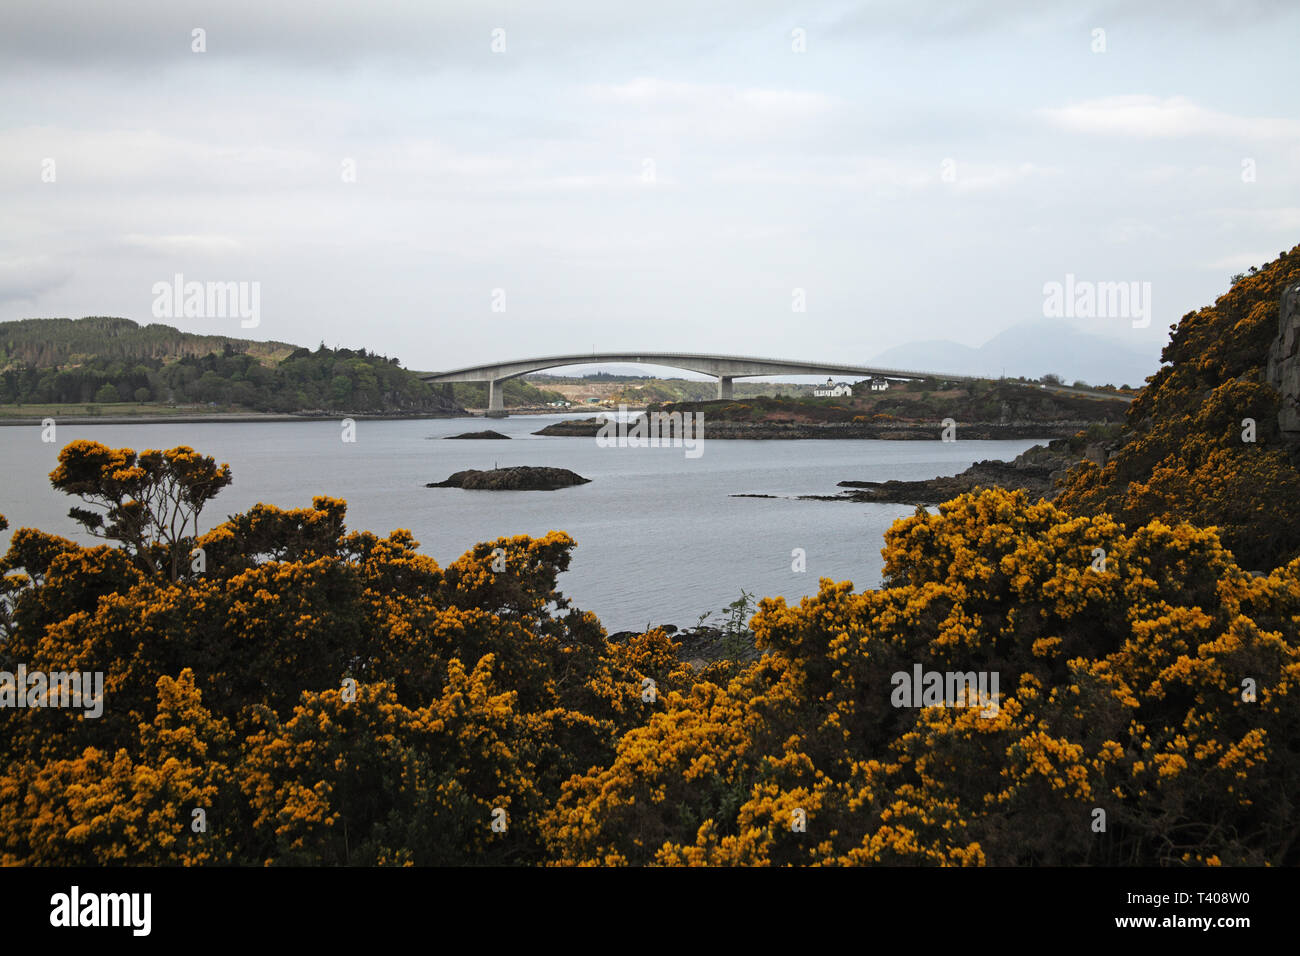 Skye Bridge und die Isle of Skye von Loch Alsh Inneren Hebriden Northwest Highlands Schottland Großbritannien Stockfoto